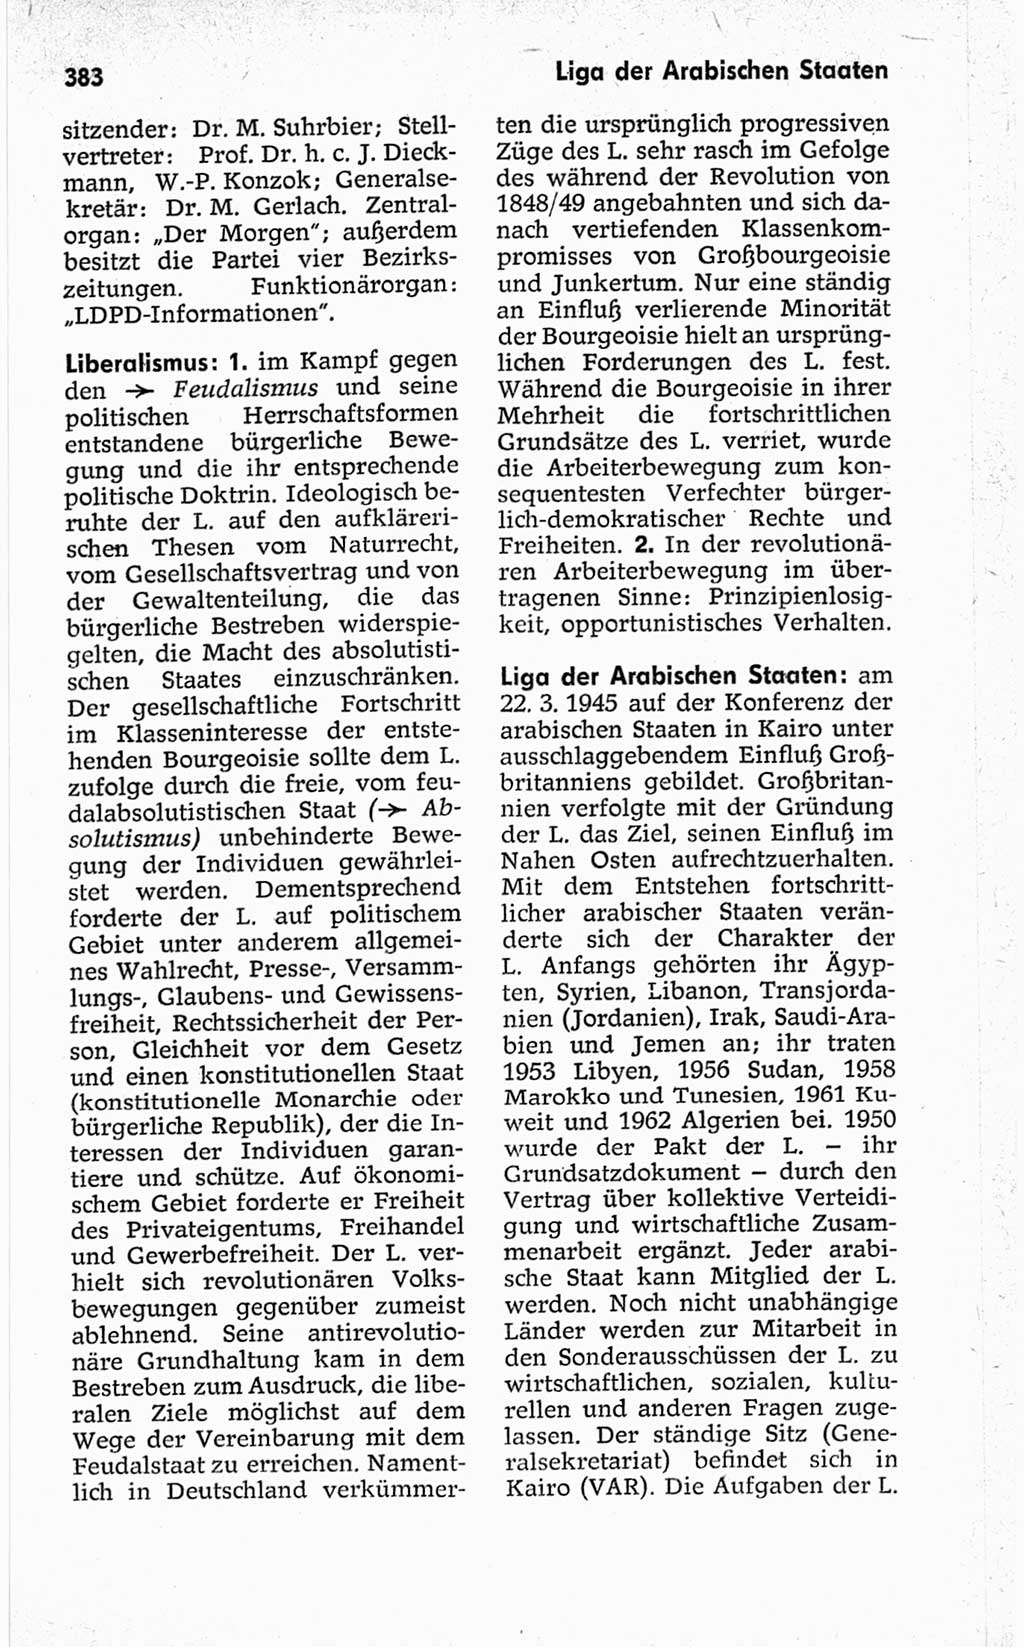 Kleines politisches Wörterbuch [Deutsche Demokratische Republik (DDR)] 1967, Seite 383 (Kl. pol. Wb. DDR 1967, S. 383)